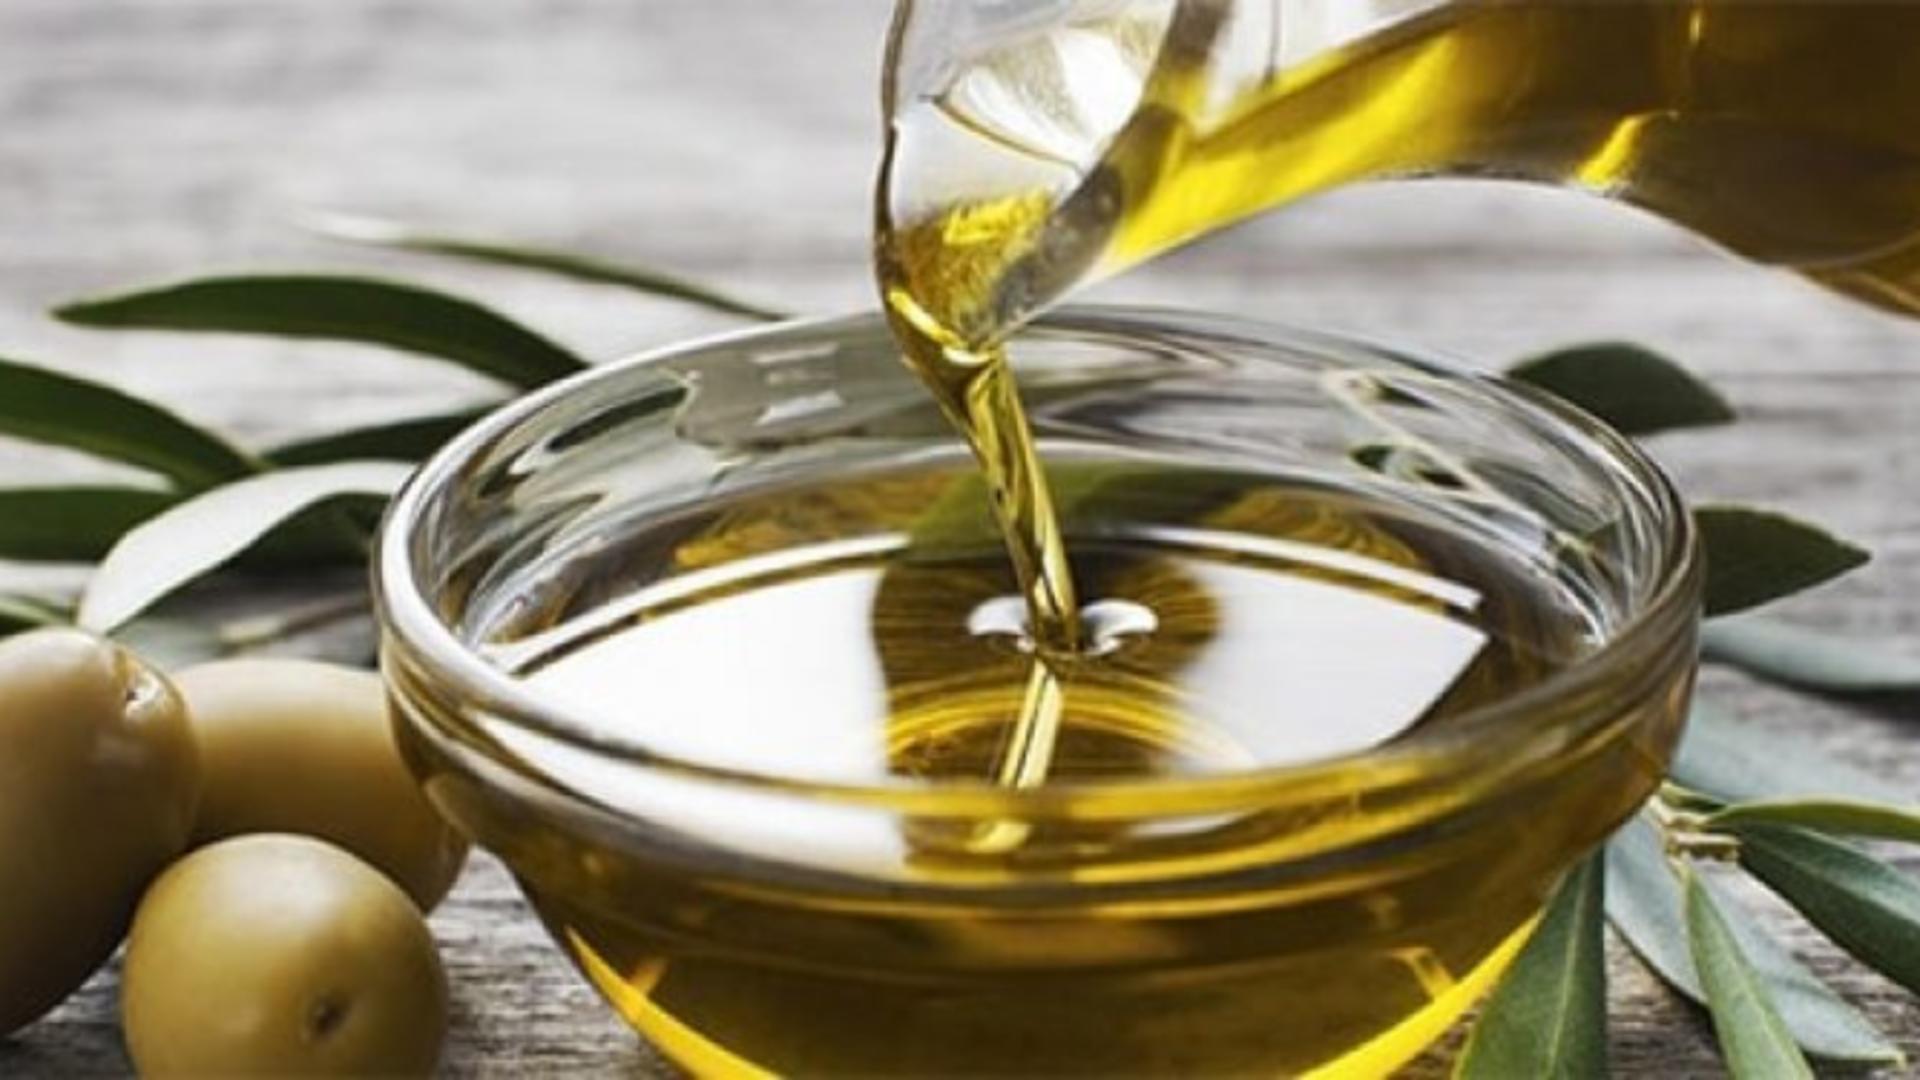 Cum să alegi cel mai sănătos ulei de măsline – Sfaturi mai puțin cunoscute – Inclusiv sticla în care e ambalat poate afecta calitatea